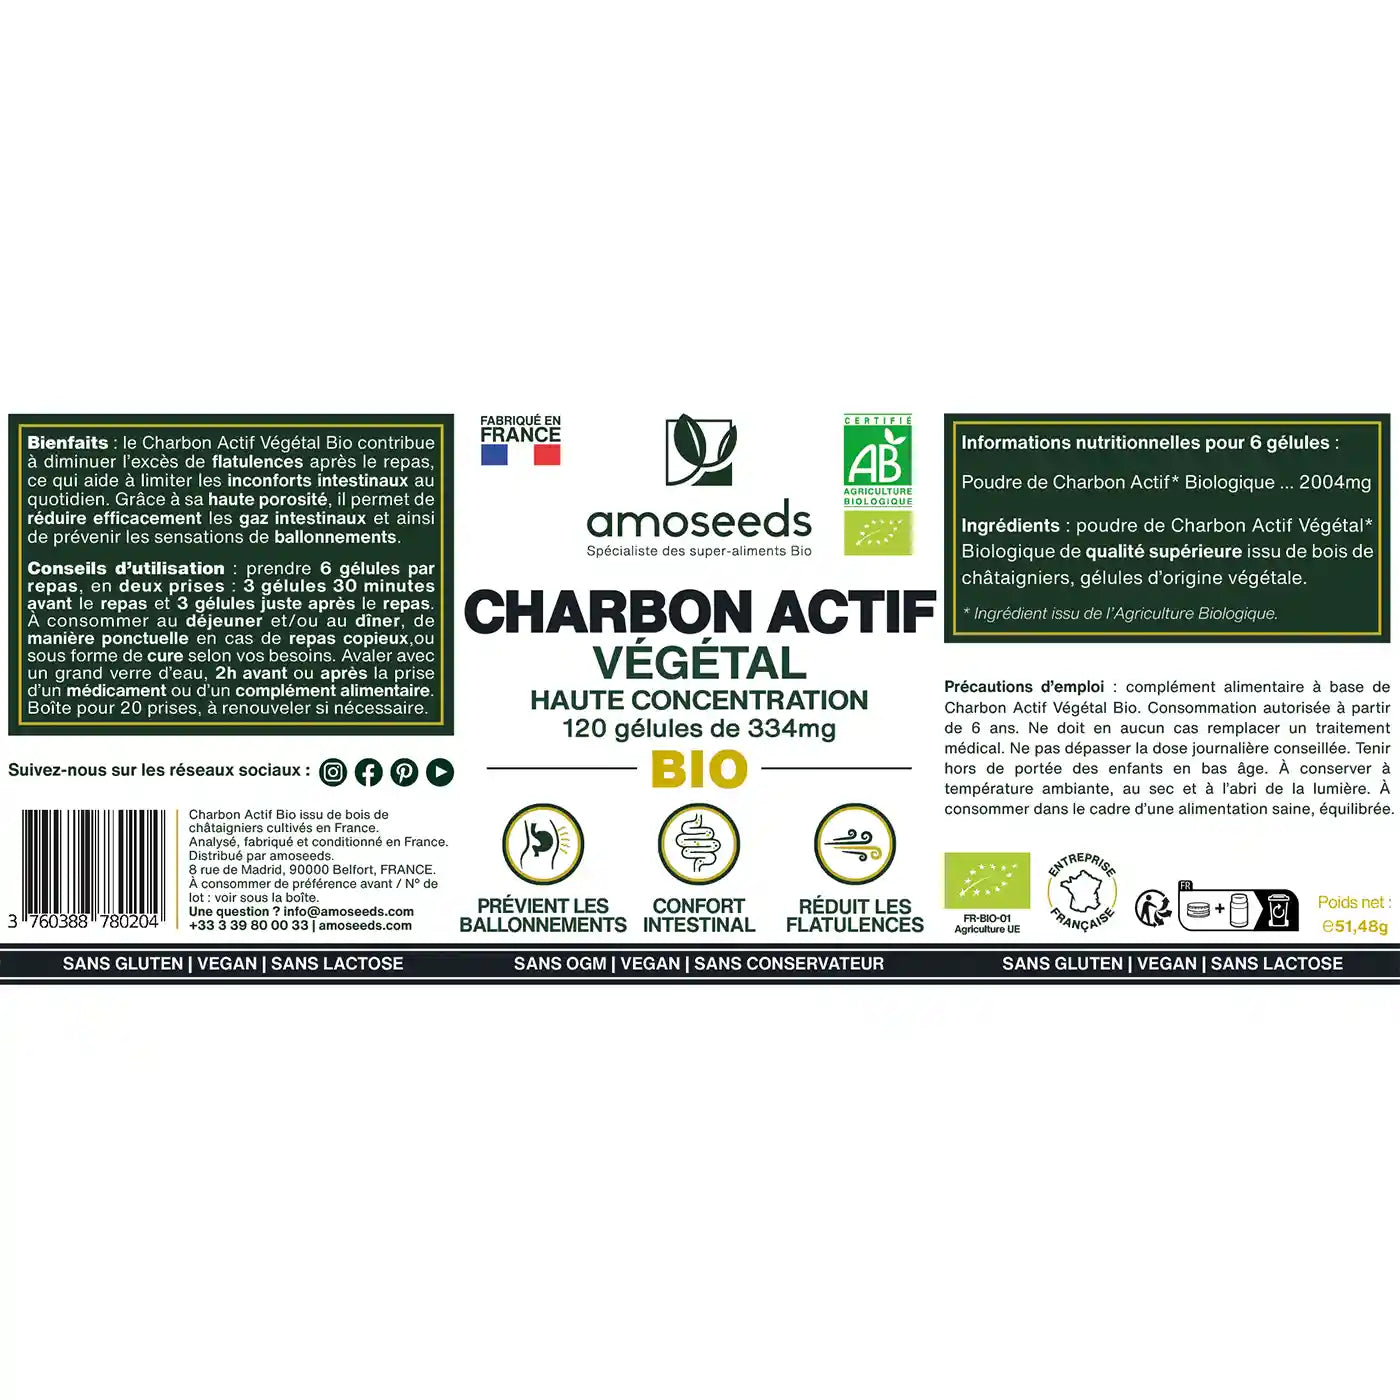 Charbon actif bio amoseeds specialiste des super aliments bio